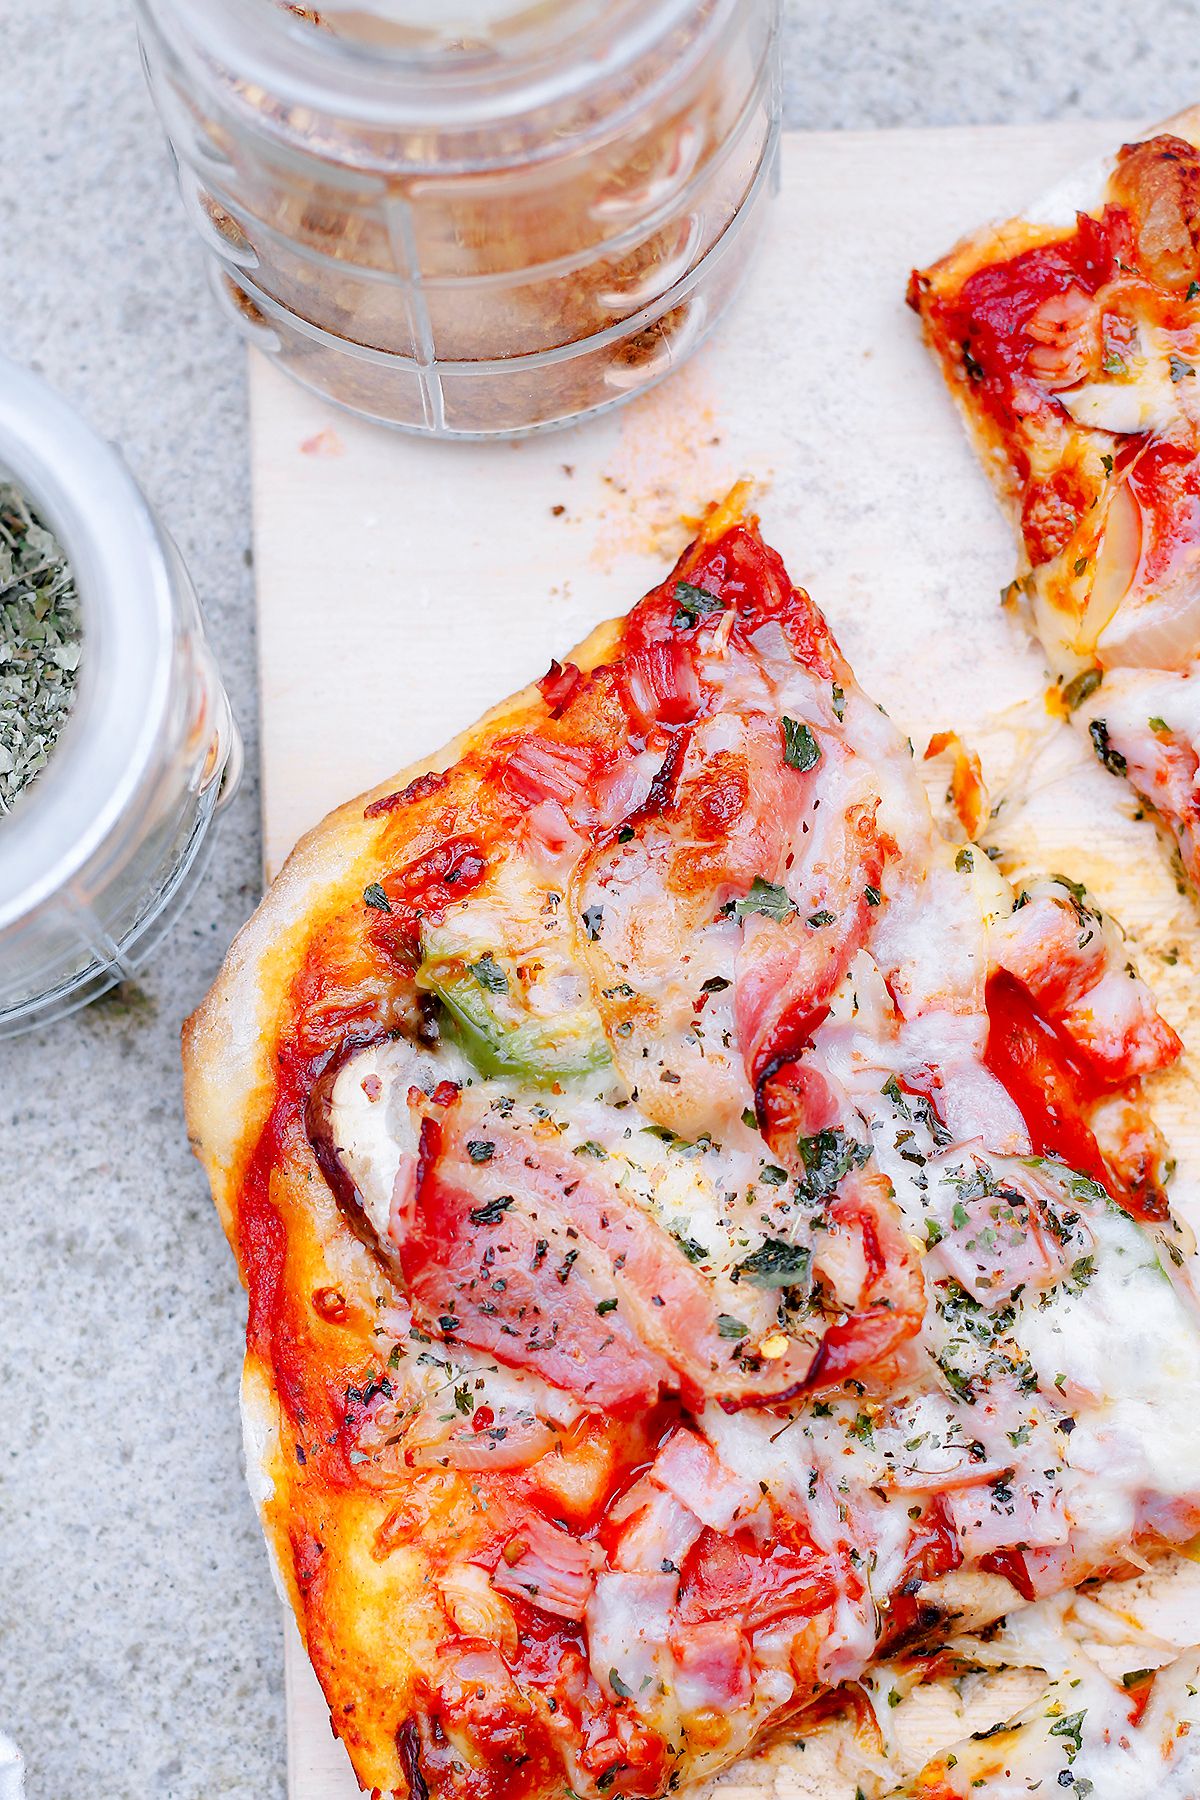 domowa pizza z boczkiem, pyszna i aromatyczna na blogu codojedzenia